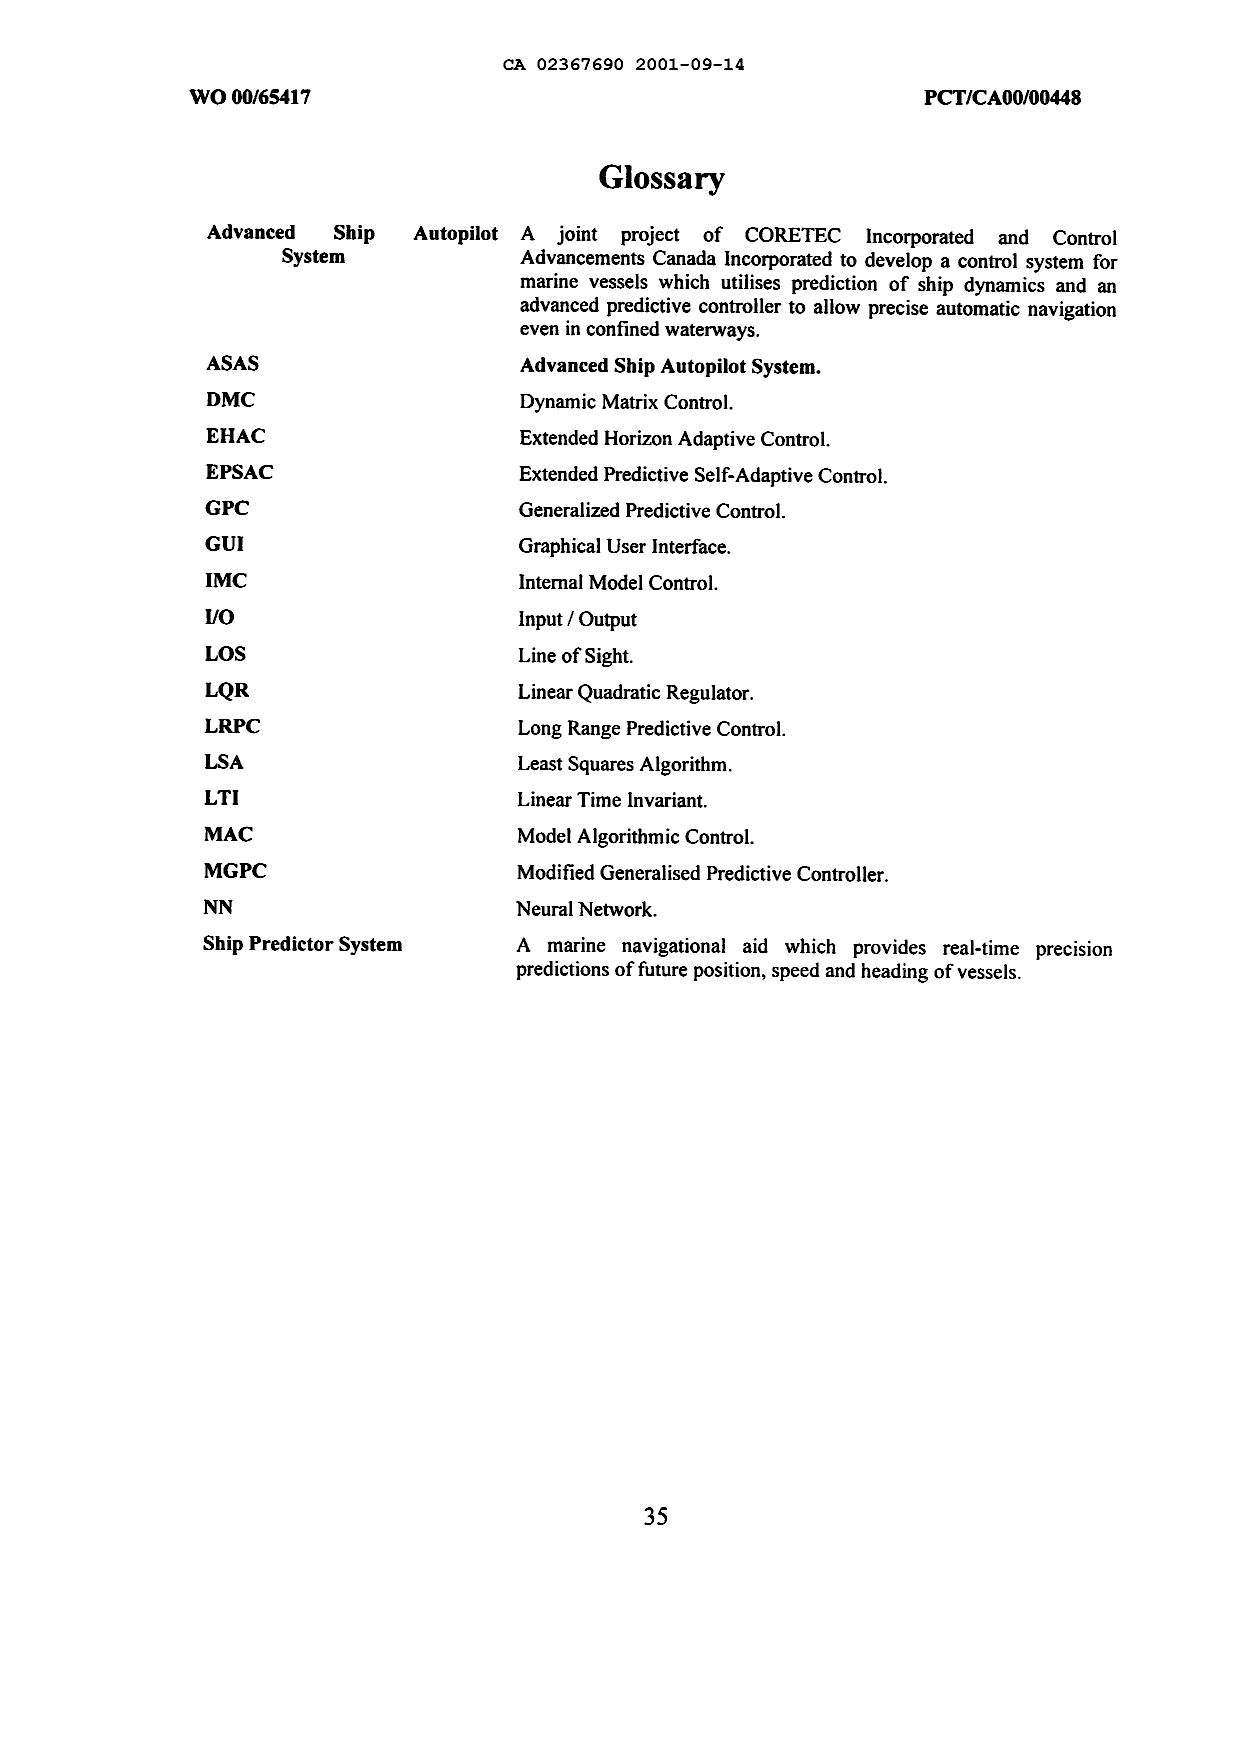 Canadian Patent Document 2367690. Description 20031222. Image 35 of 35